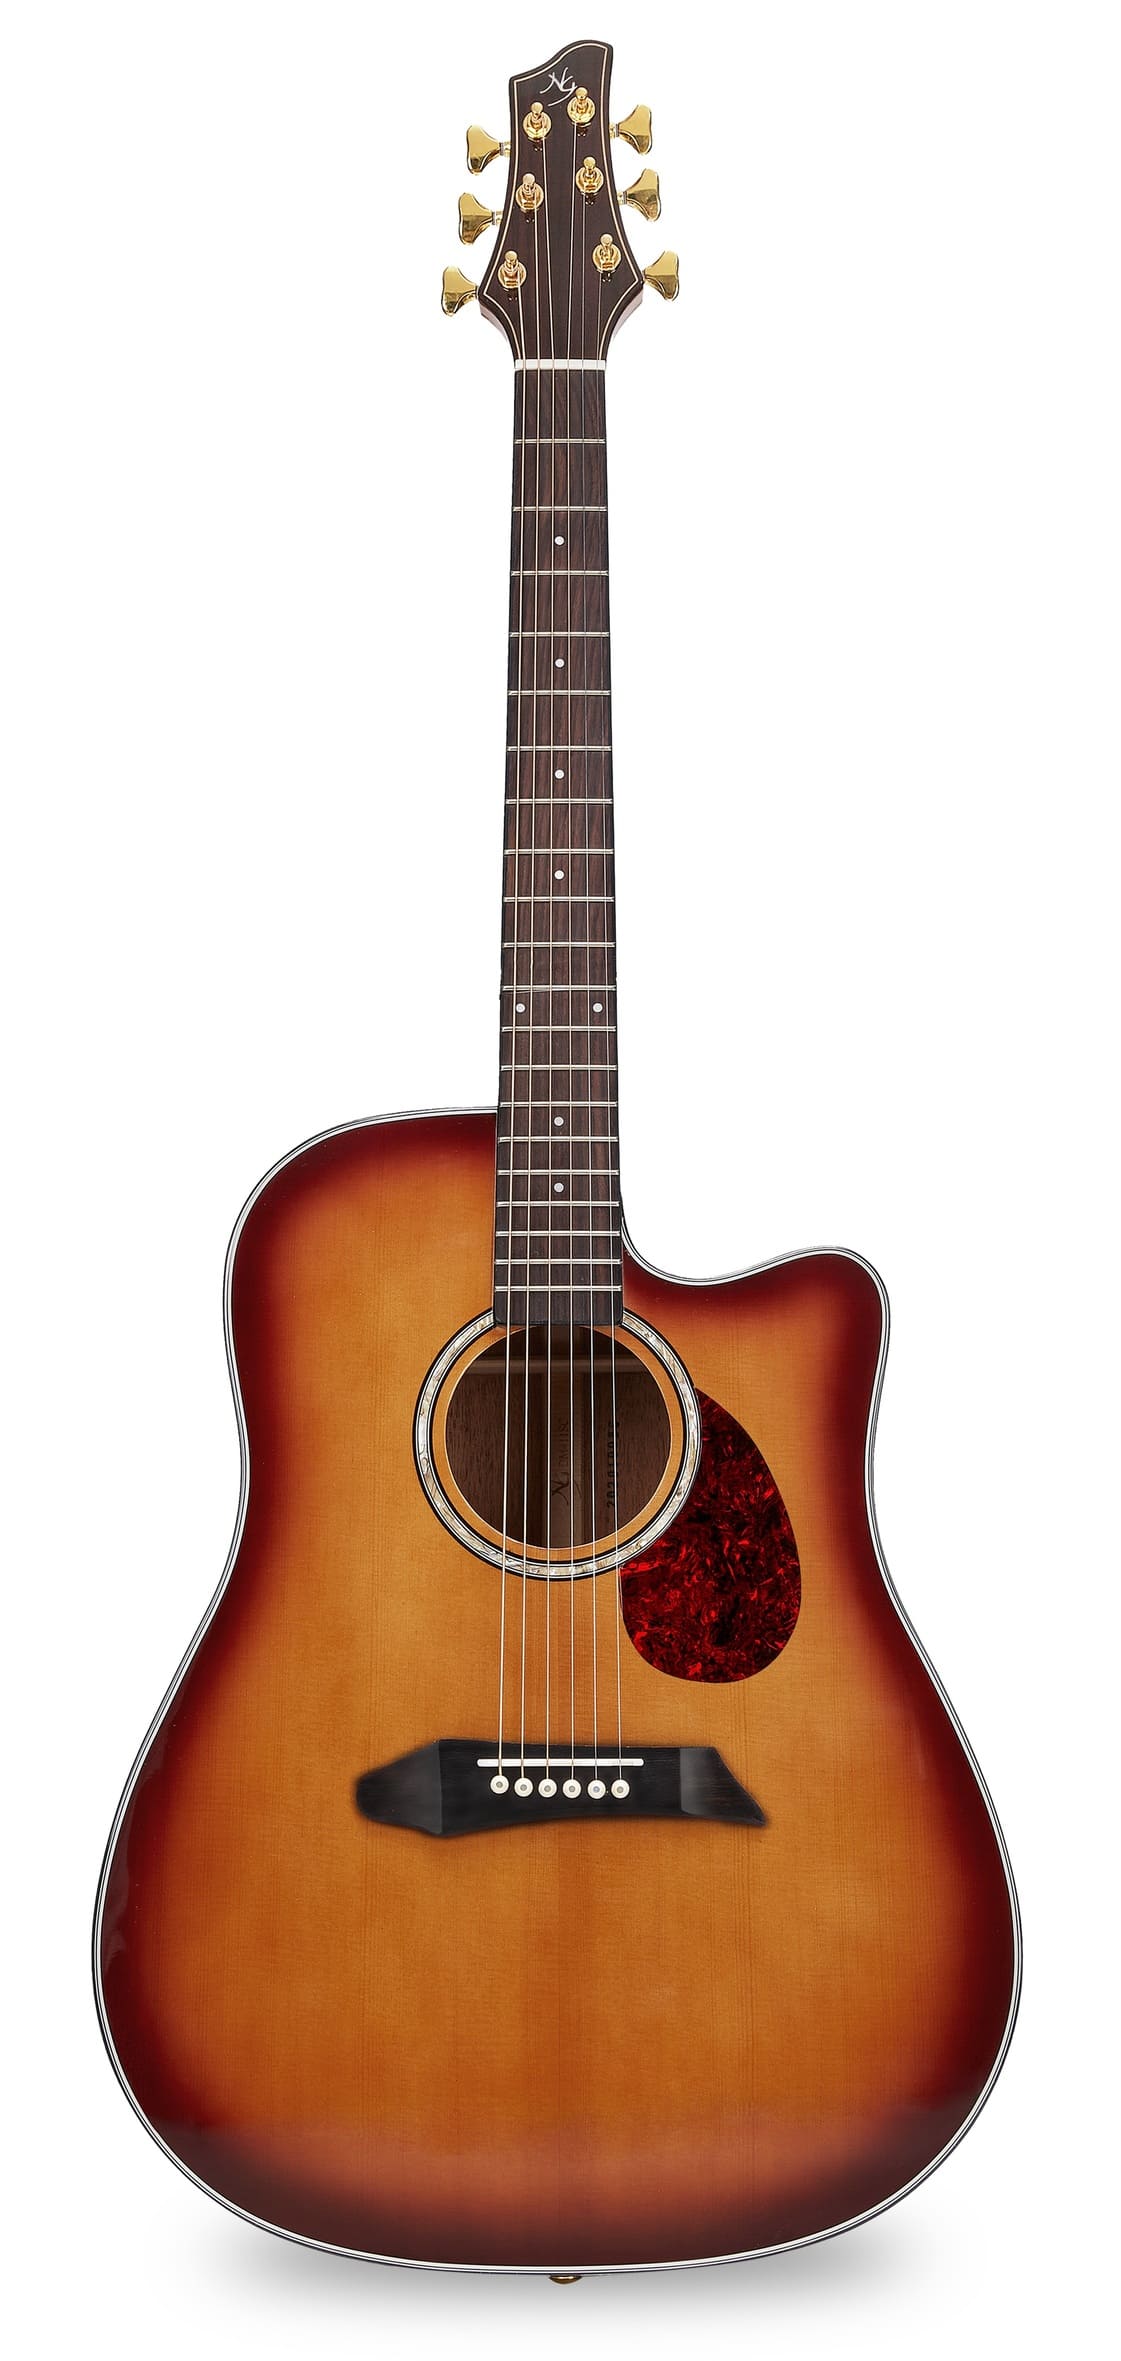 NG DM411SC Peach Акустическая гитара, санберст, дредноут